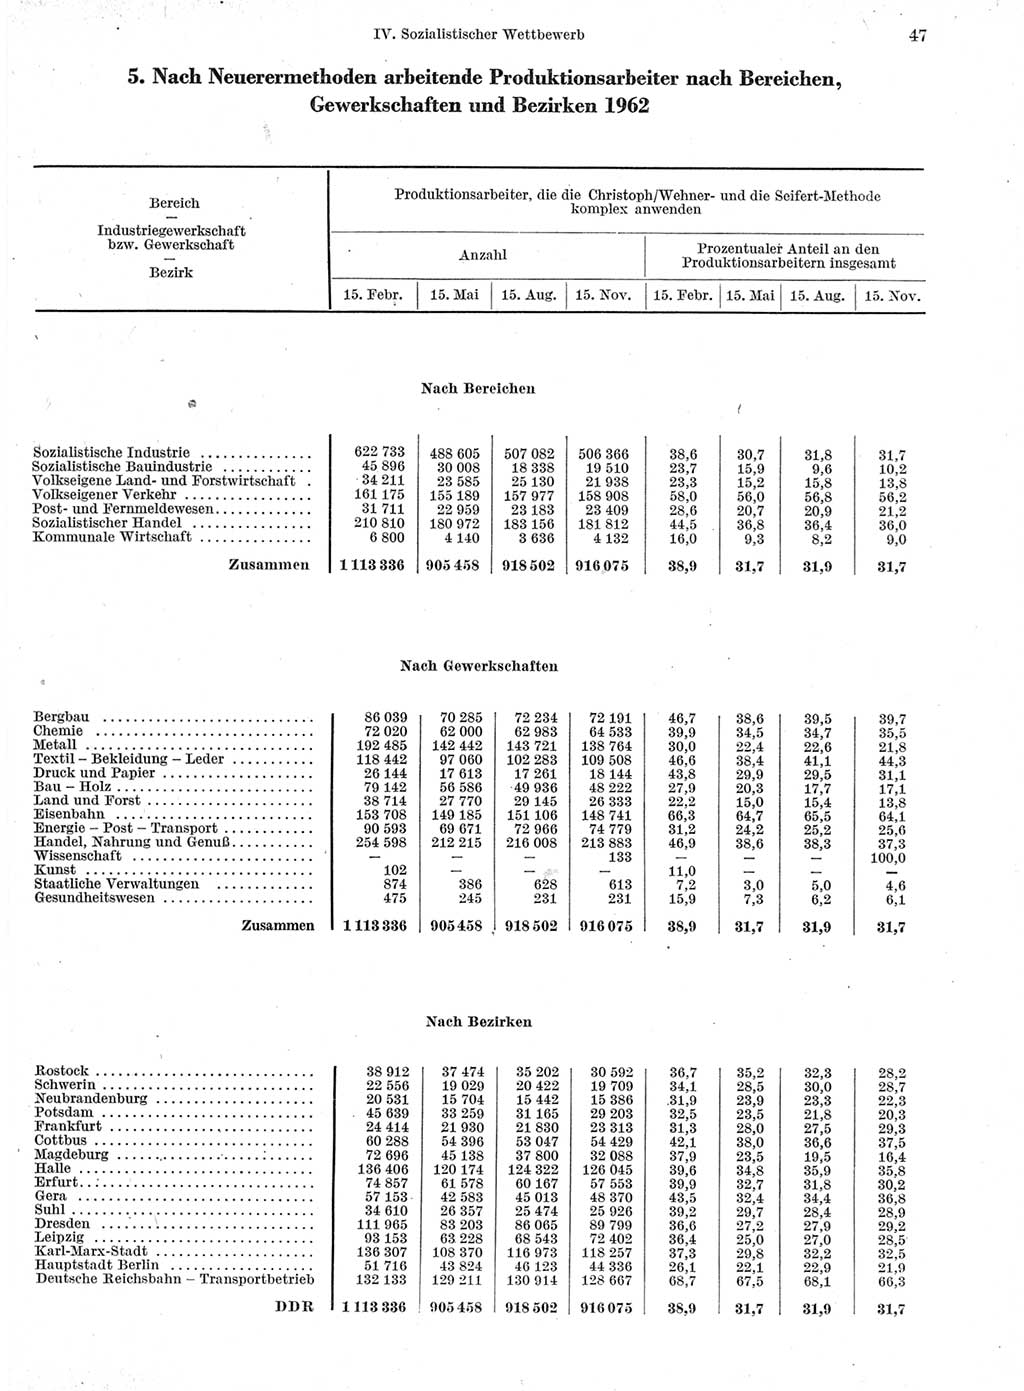 Statistisches Jahrbuch der Deutschen Demokratischen Republik (DDR) 1963, Seite 47 (Stat. Jb. DDR 1963, S. 47)